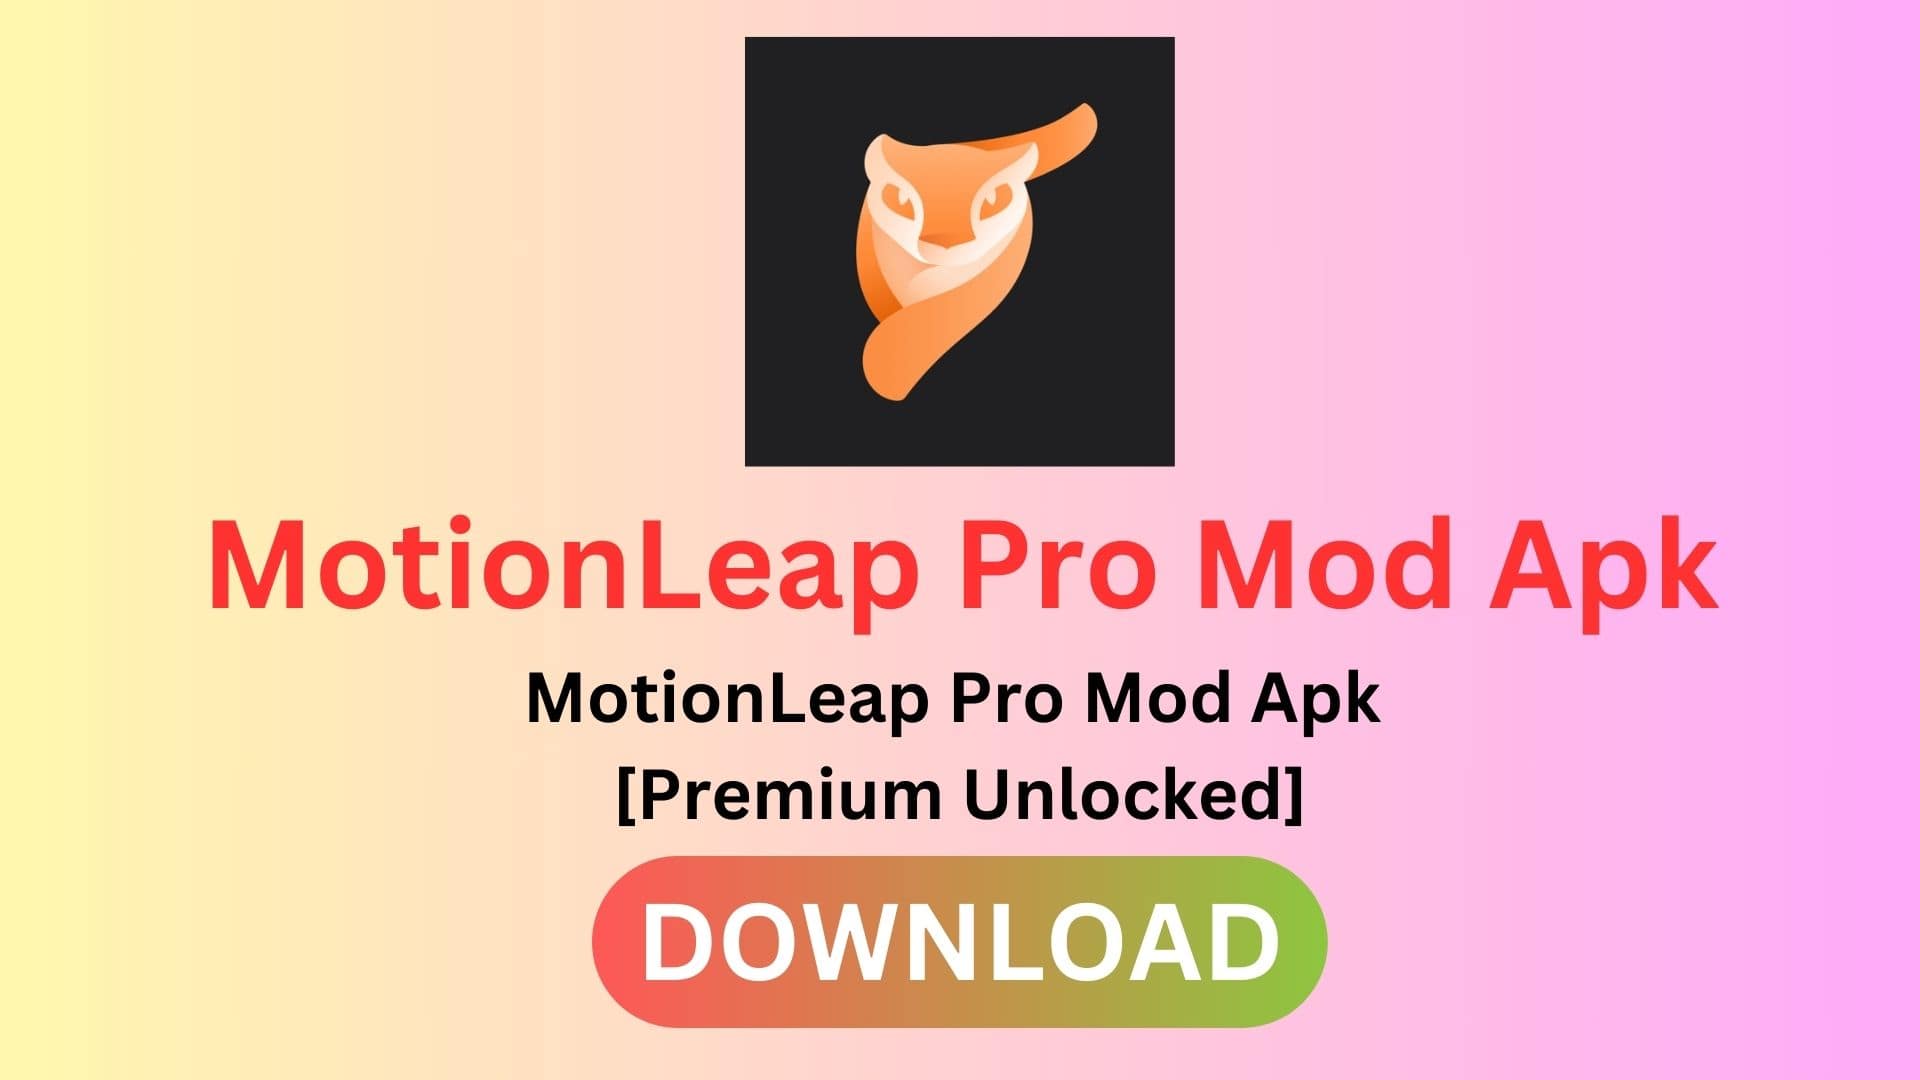 Motionleap Mod Apk